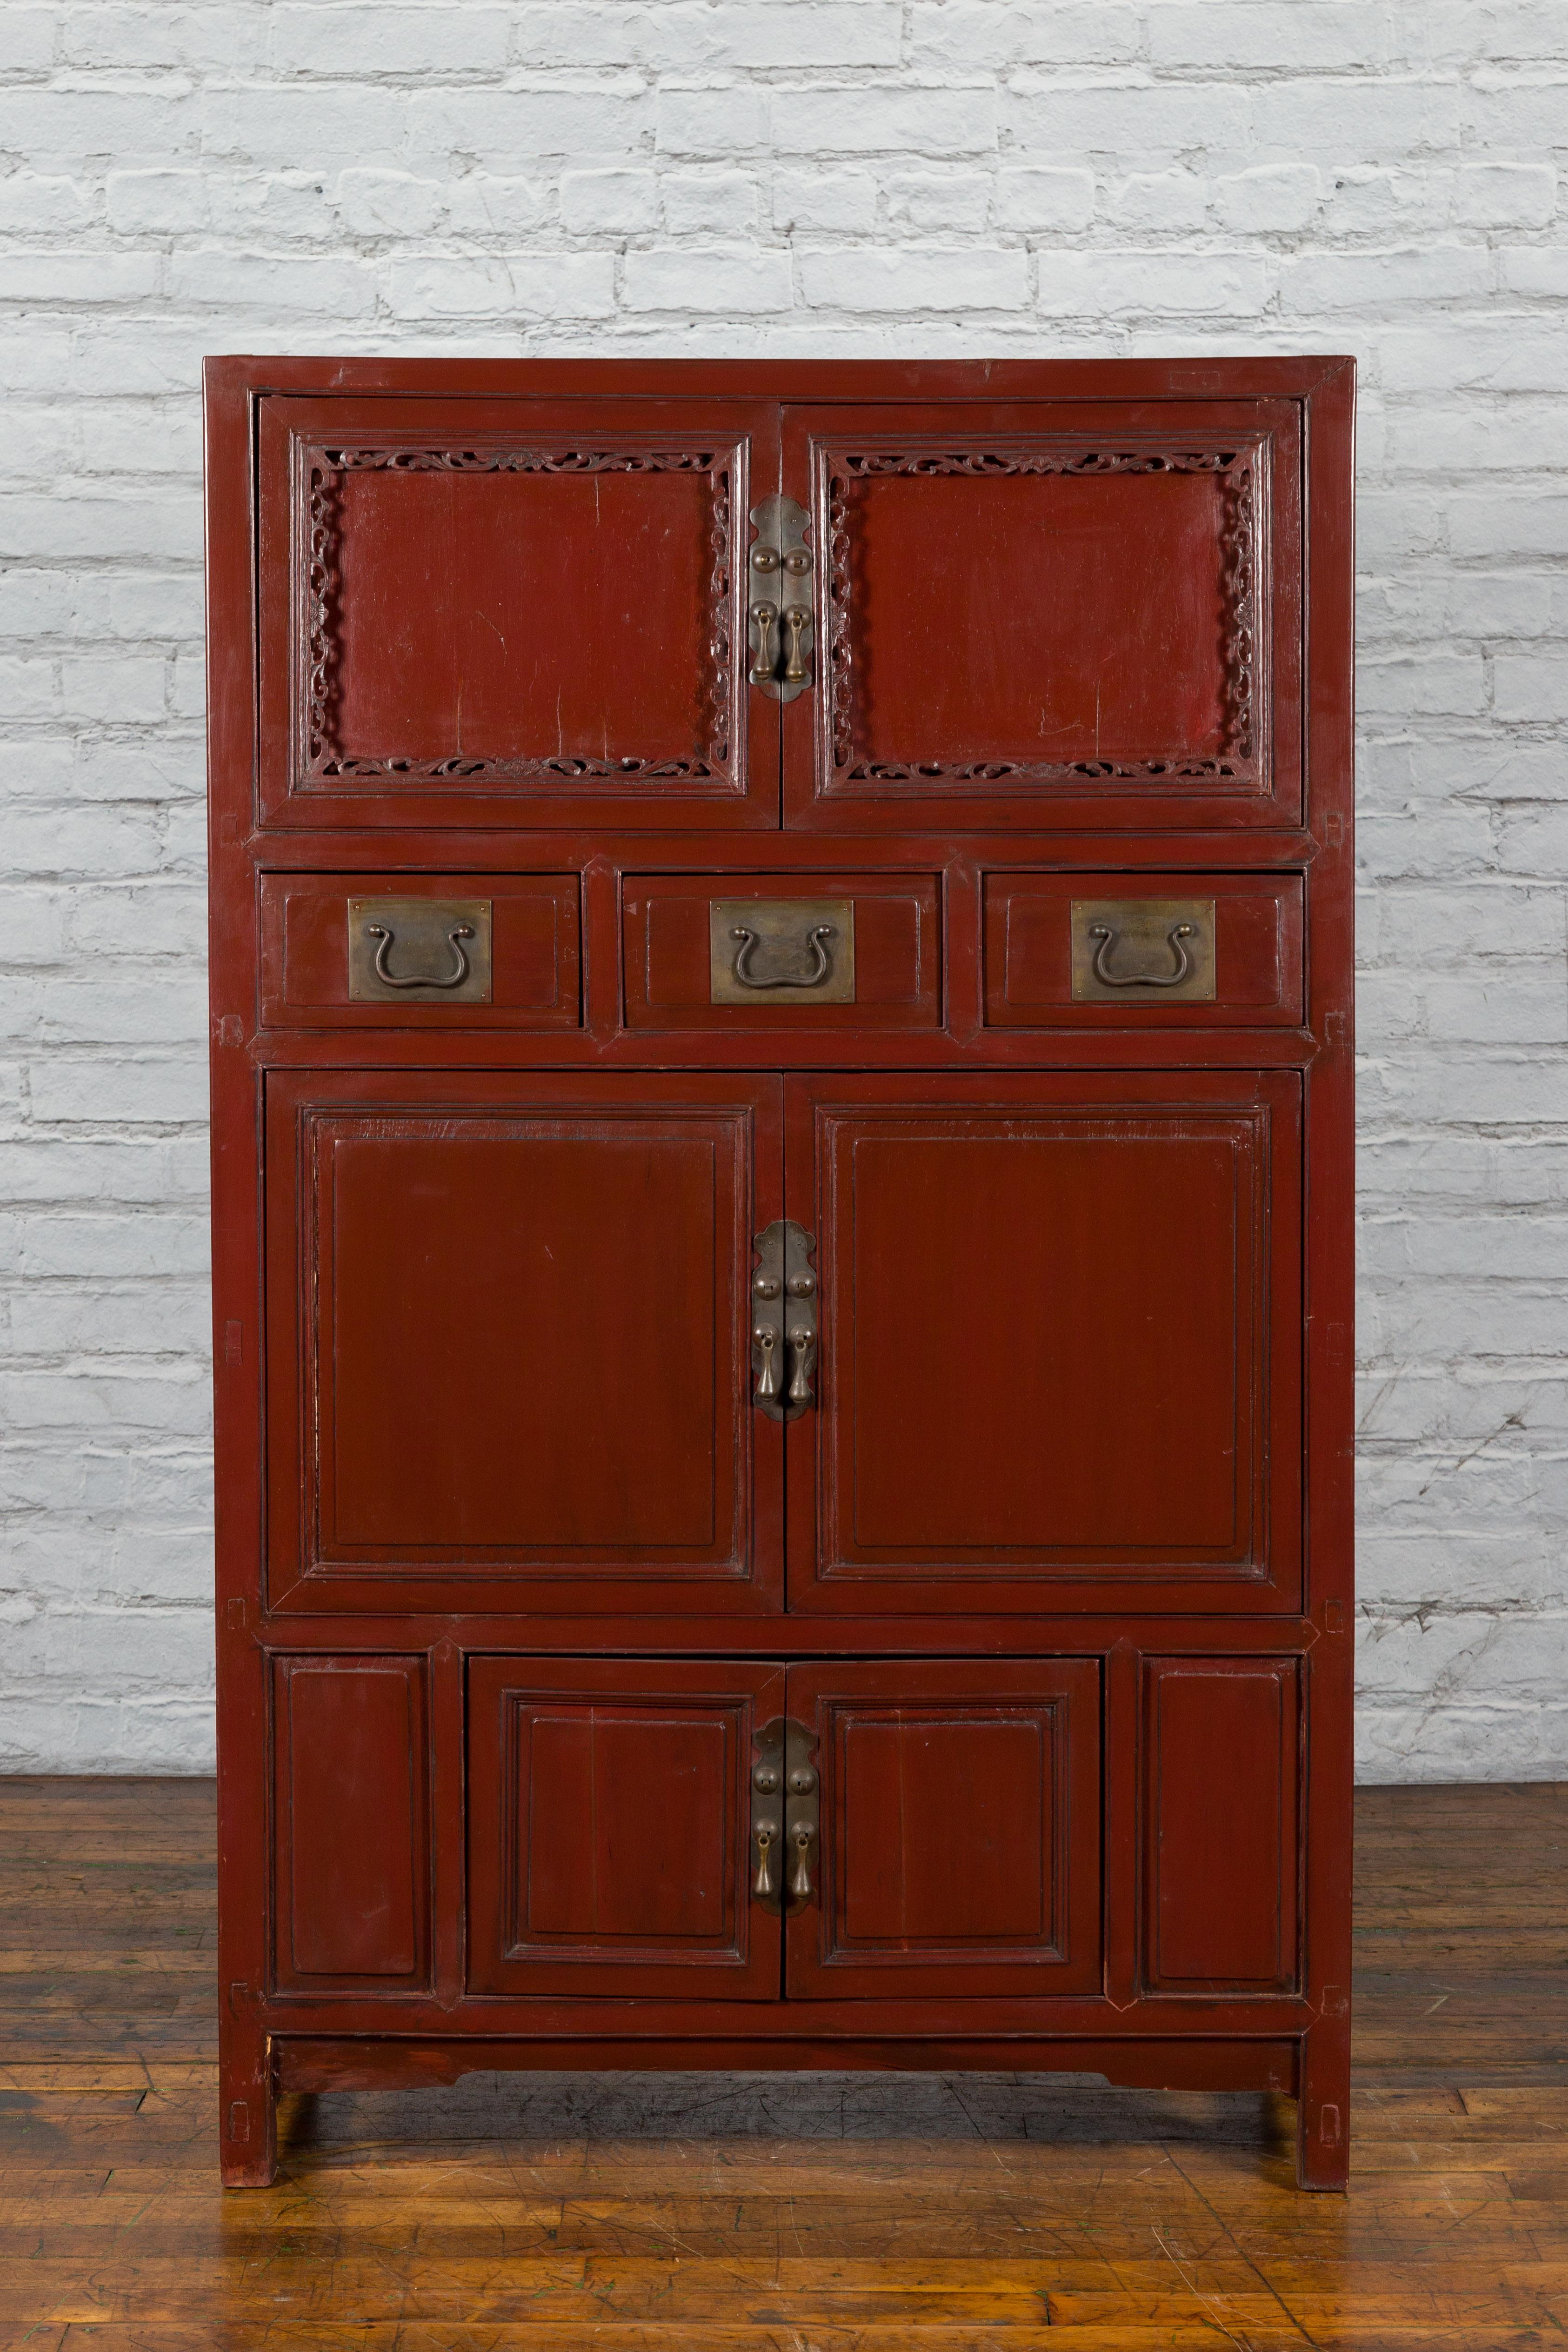 Cabinet chinois en laque rouge de la dynastie Qing, datant du milieu du 19e siècle, avec tiroirs et portes. Créée en Chine à l'époque de la dynastie Qing, cette armoire présente une silhouette linéaire parfaitement mise en valeur par une finition en